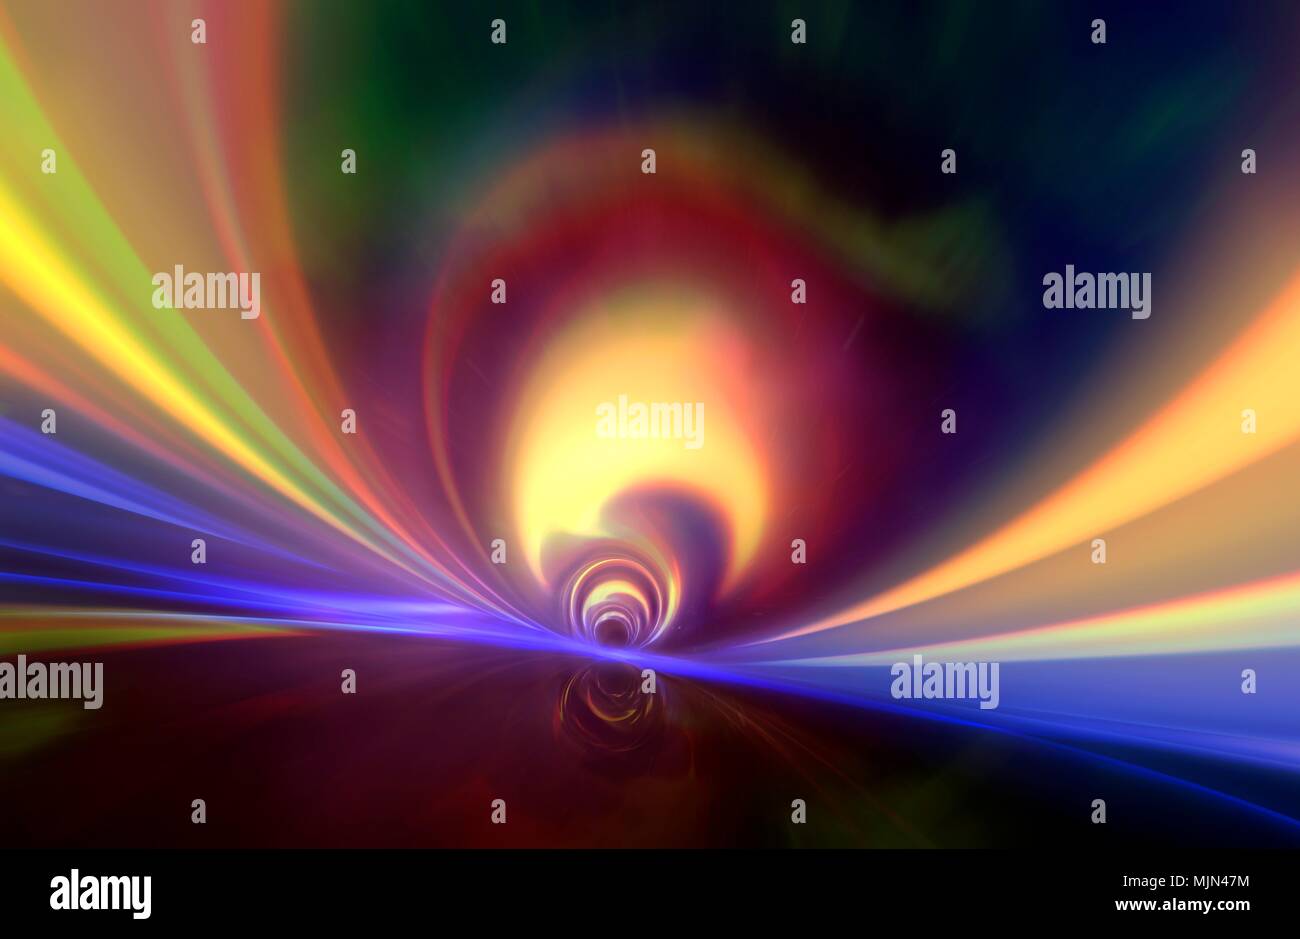 Abbildung simulieren, was der Explorer beim Überschreiten der Ereignishorizont eines Schwarzen Loches sehen konnten. Der Ereignishorizont ist Grenze, die die schwarze Bohrung, die Region, über die hinaus die Fluchtgeschwindigkeit grösser als die des Lichts. Stockfoto